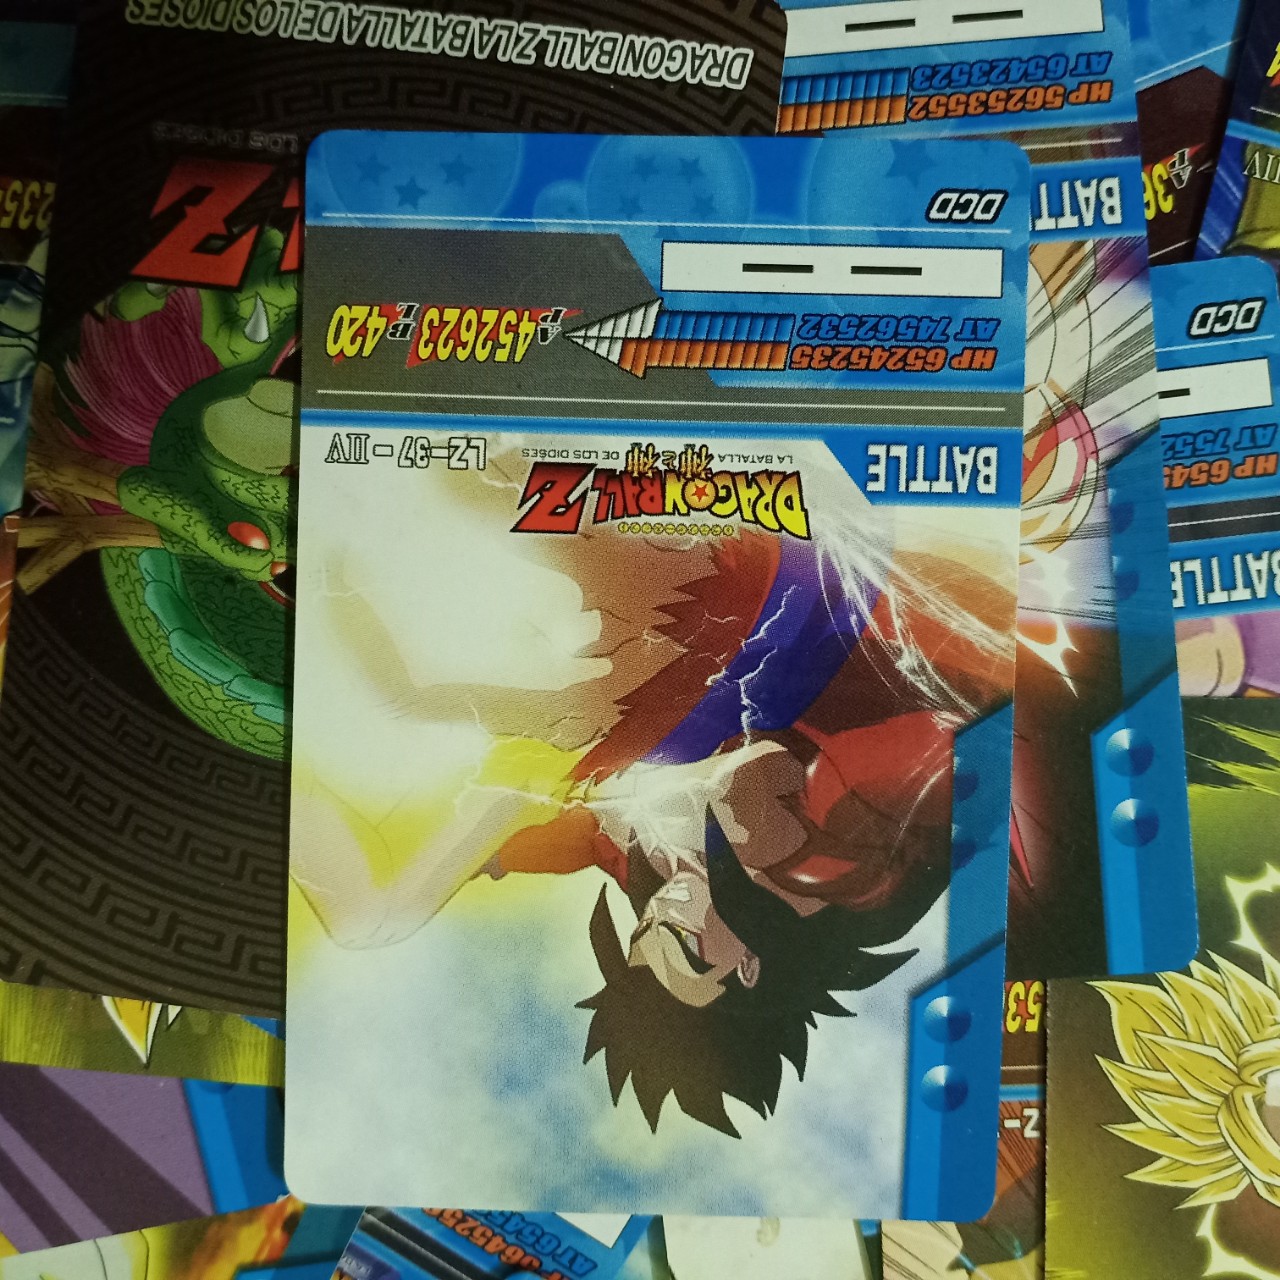 1459 Card Game Dragon Ball Super Combo 20 thẻ 7 viên ngọc rồng loại tốt kam kết không trùng